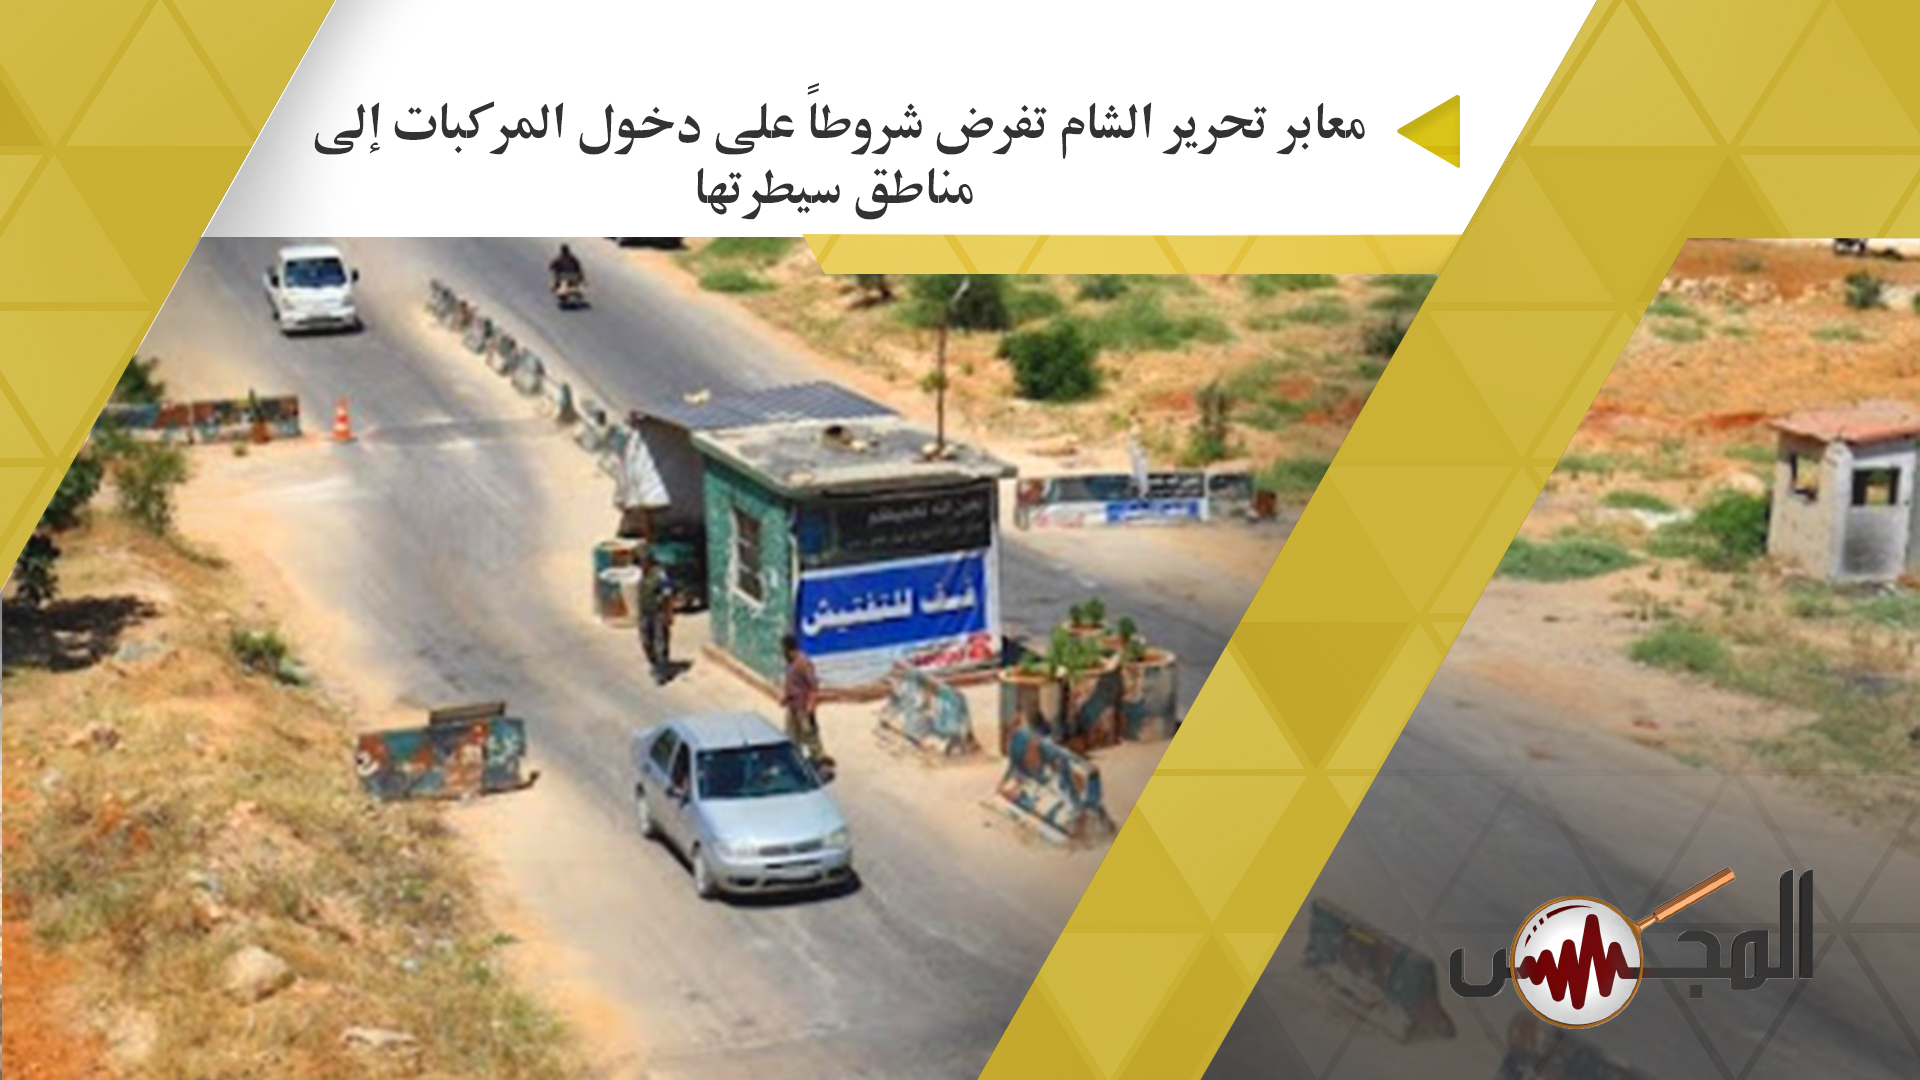 معابر تحرير الشام تفرض شروطاً على دخول المركبات إلى مناطق سيطرتها